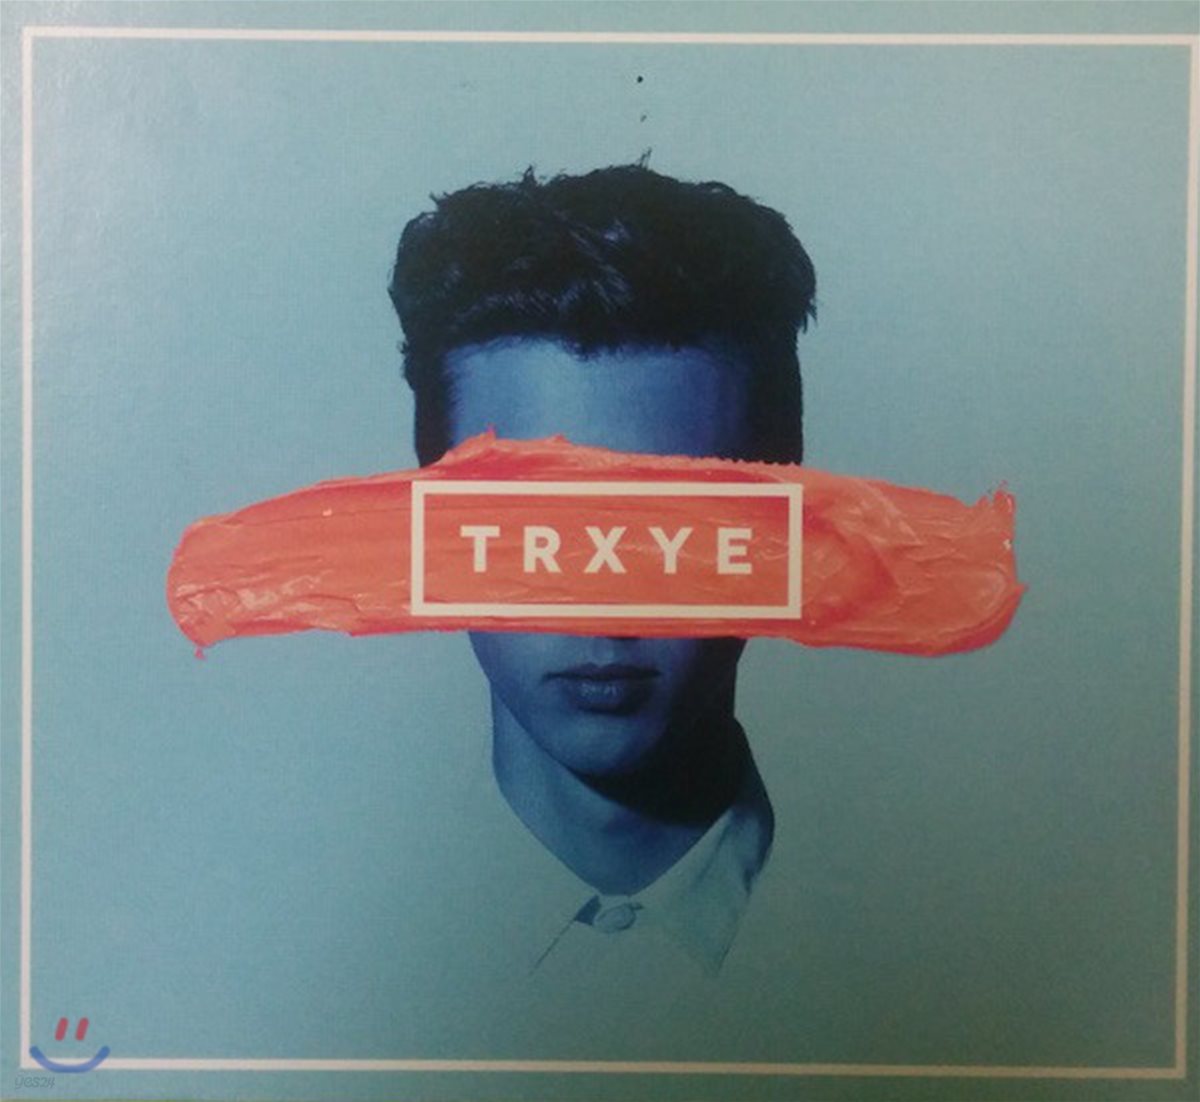 Troye Sivan - Trxye 트로이 시반 [EP]